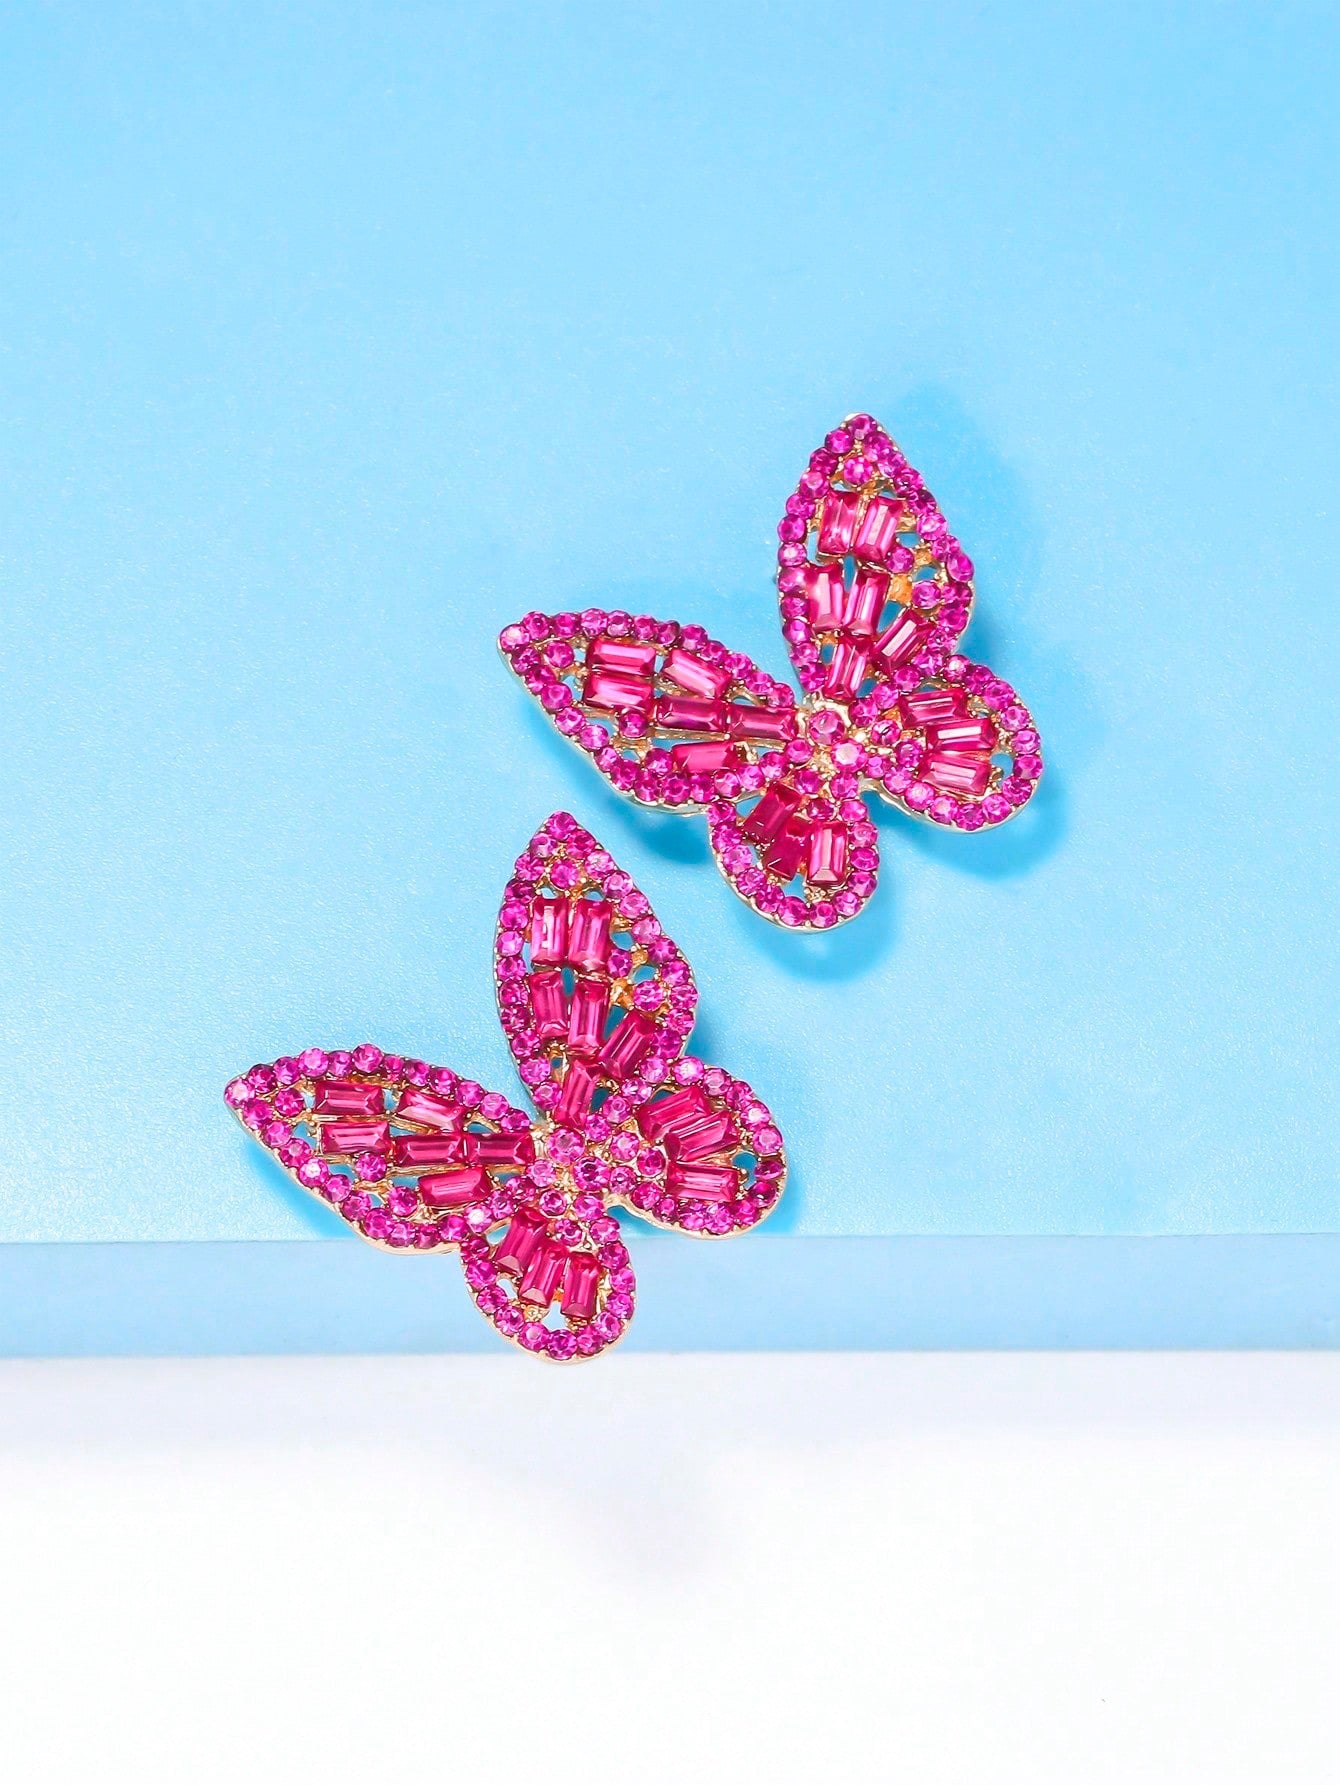 Rhinestone Butterfly Earrings